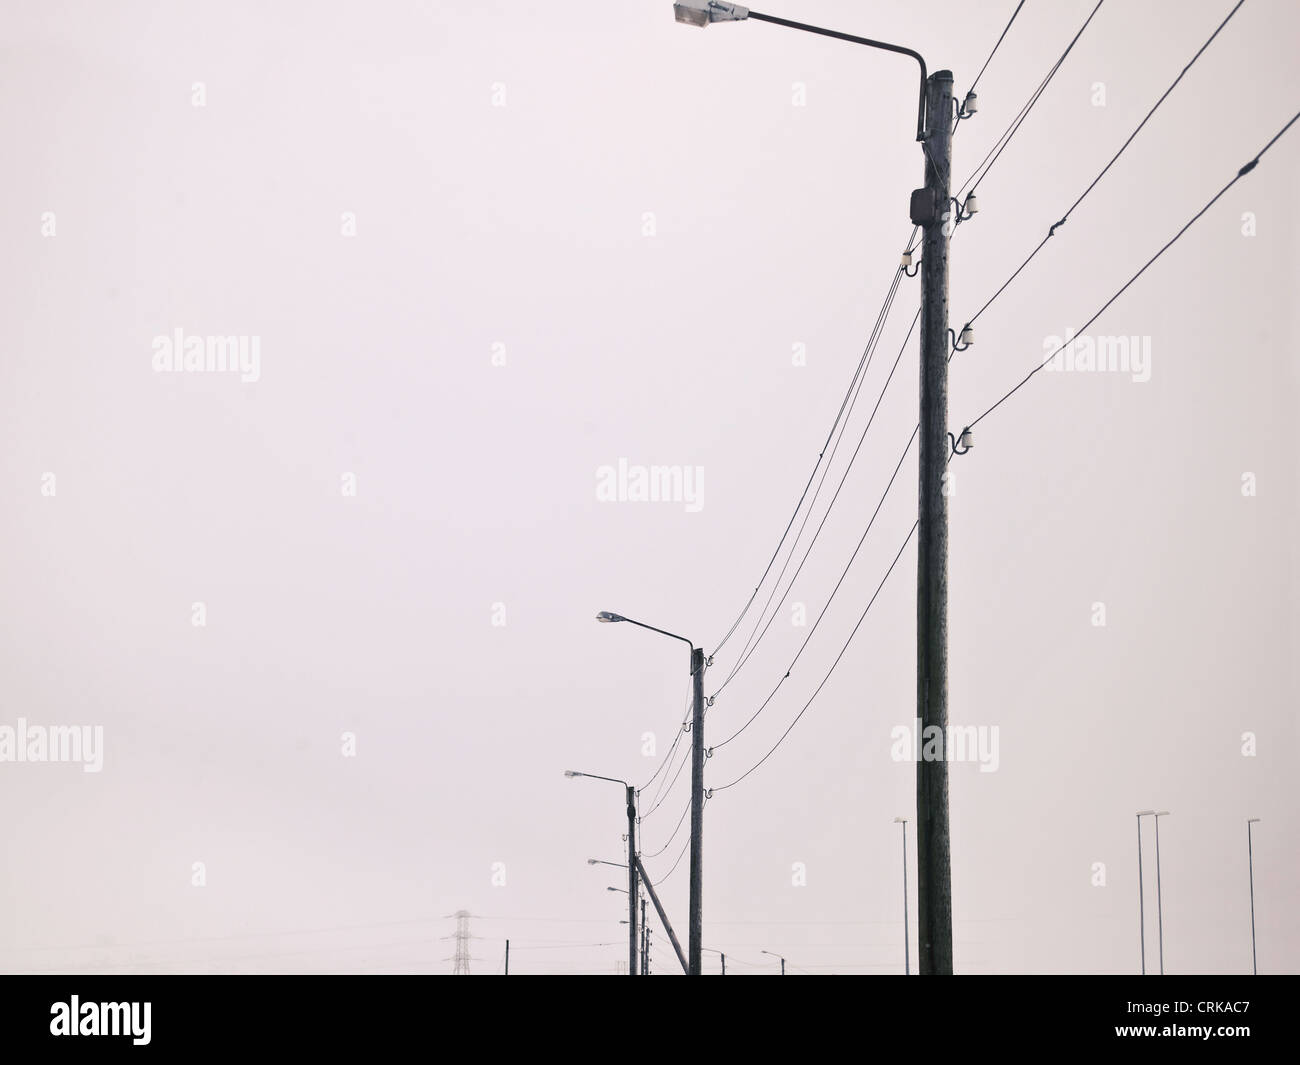 Street lights in snowy landscape Stock Photo